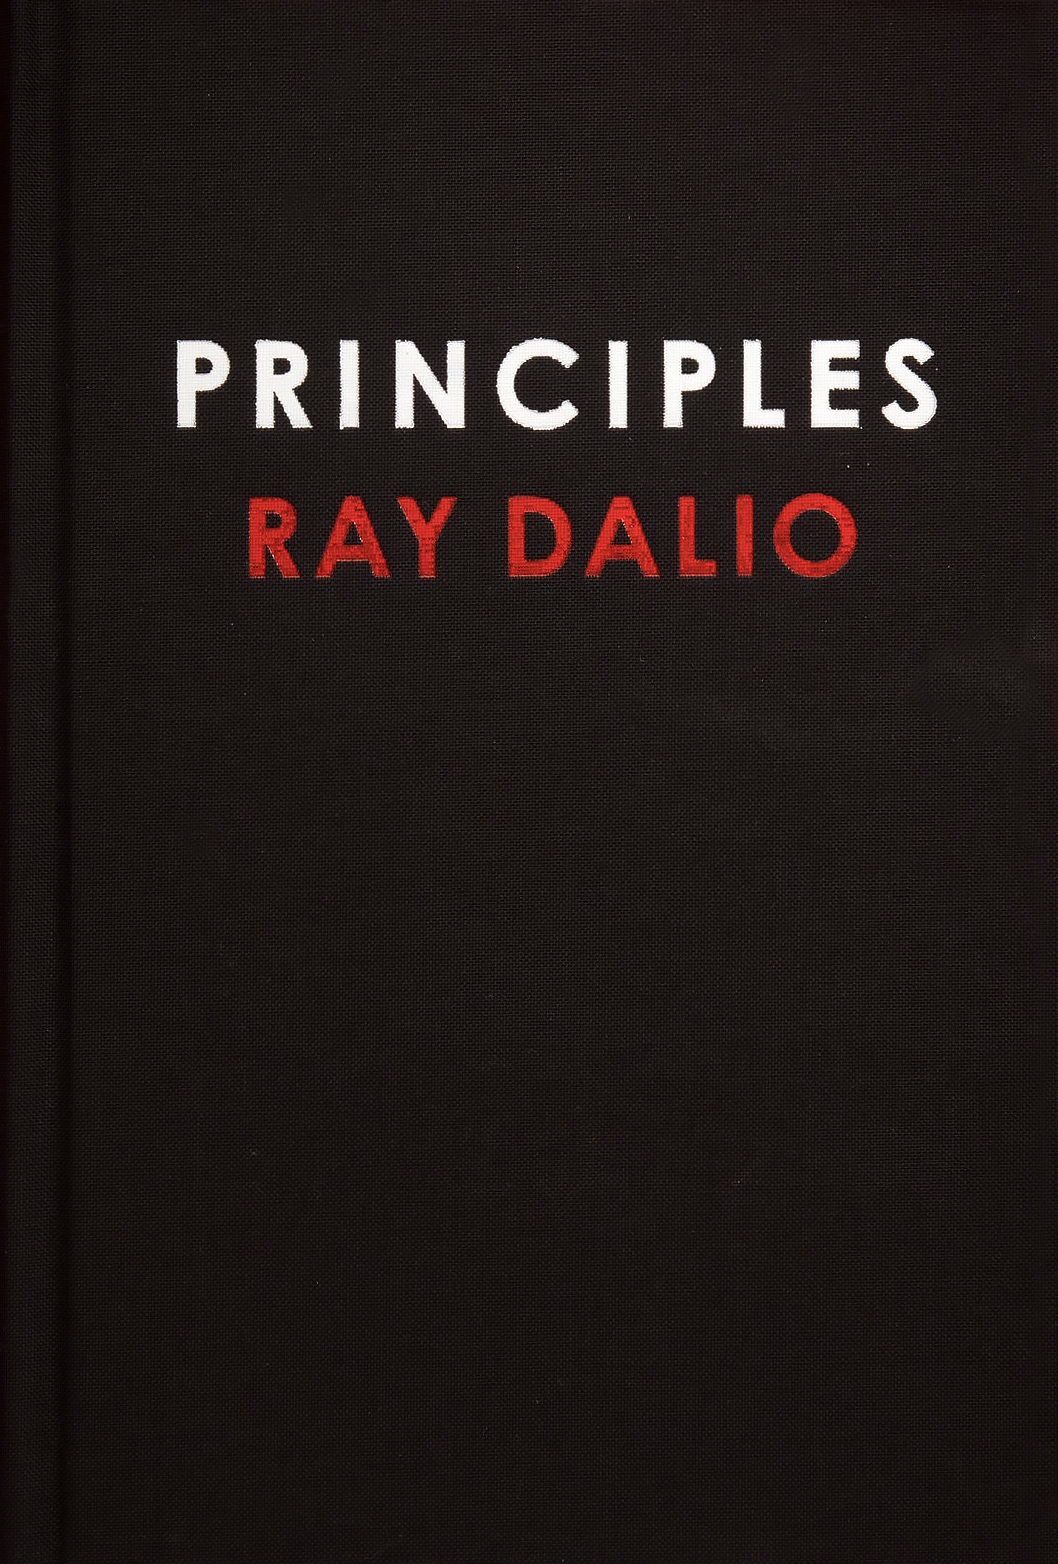 Ray Dalio - Academy of Achievement1058 x 1564